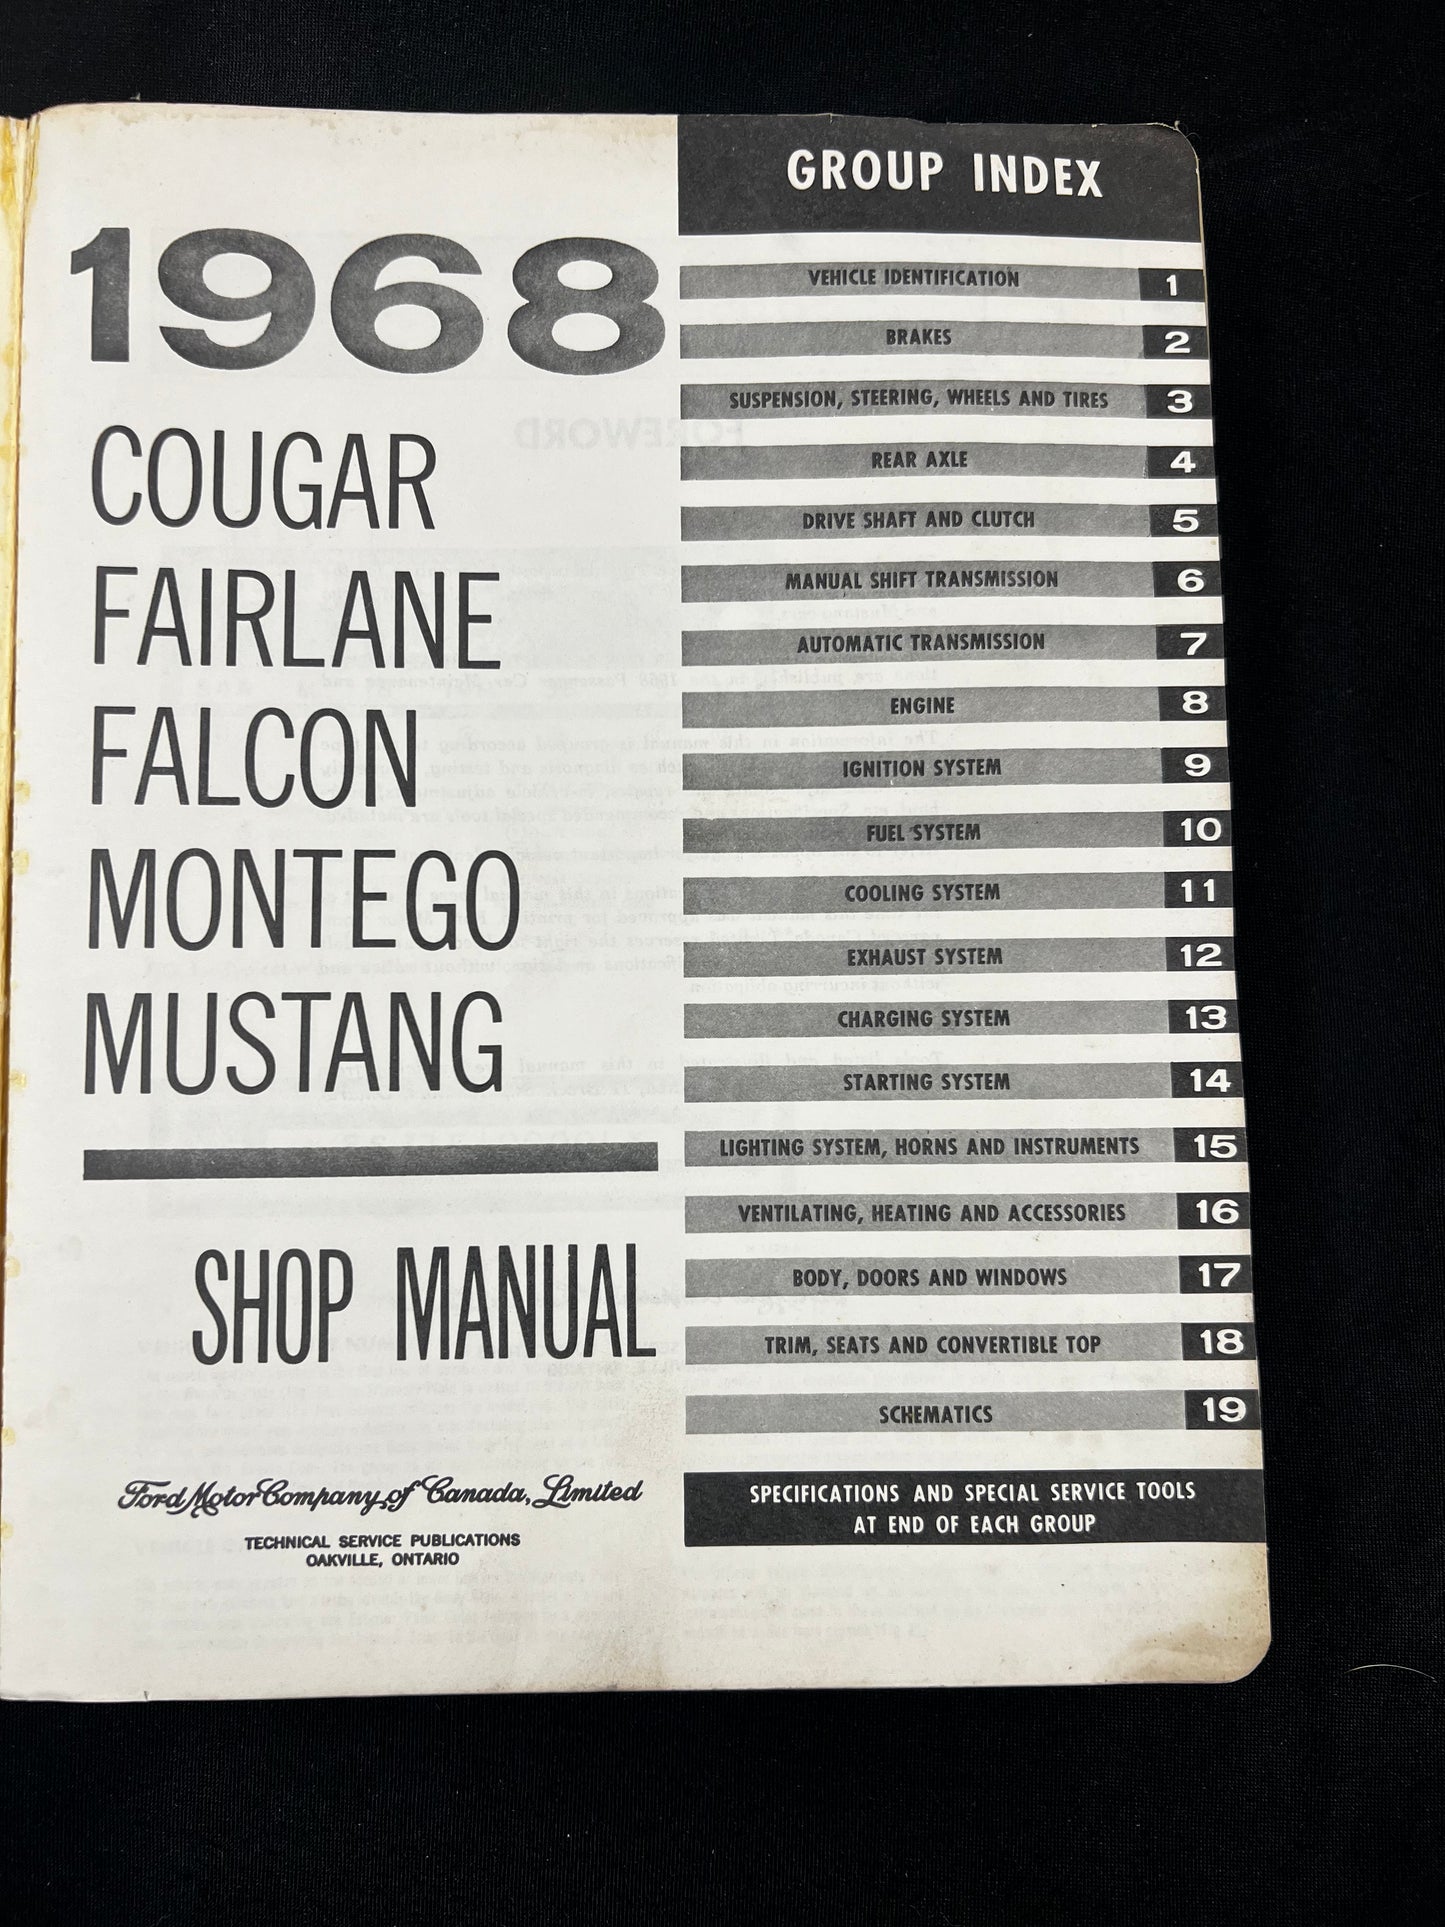 1968 Cougar Fairlane Falcon Montego Mustag Shop Manual *ORIGINAL*